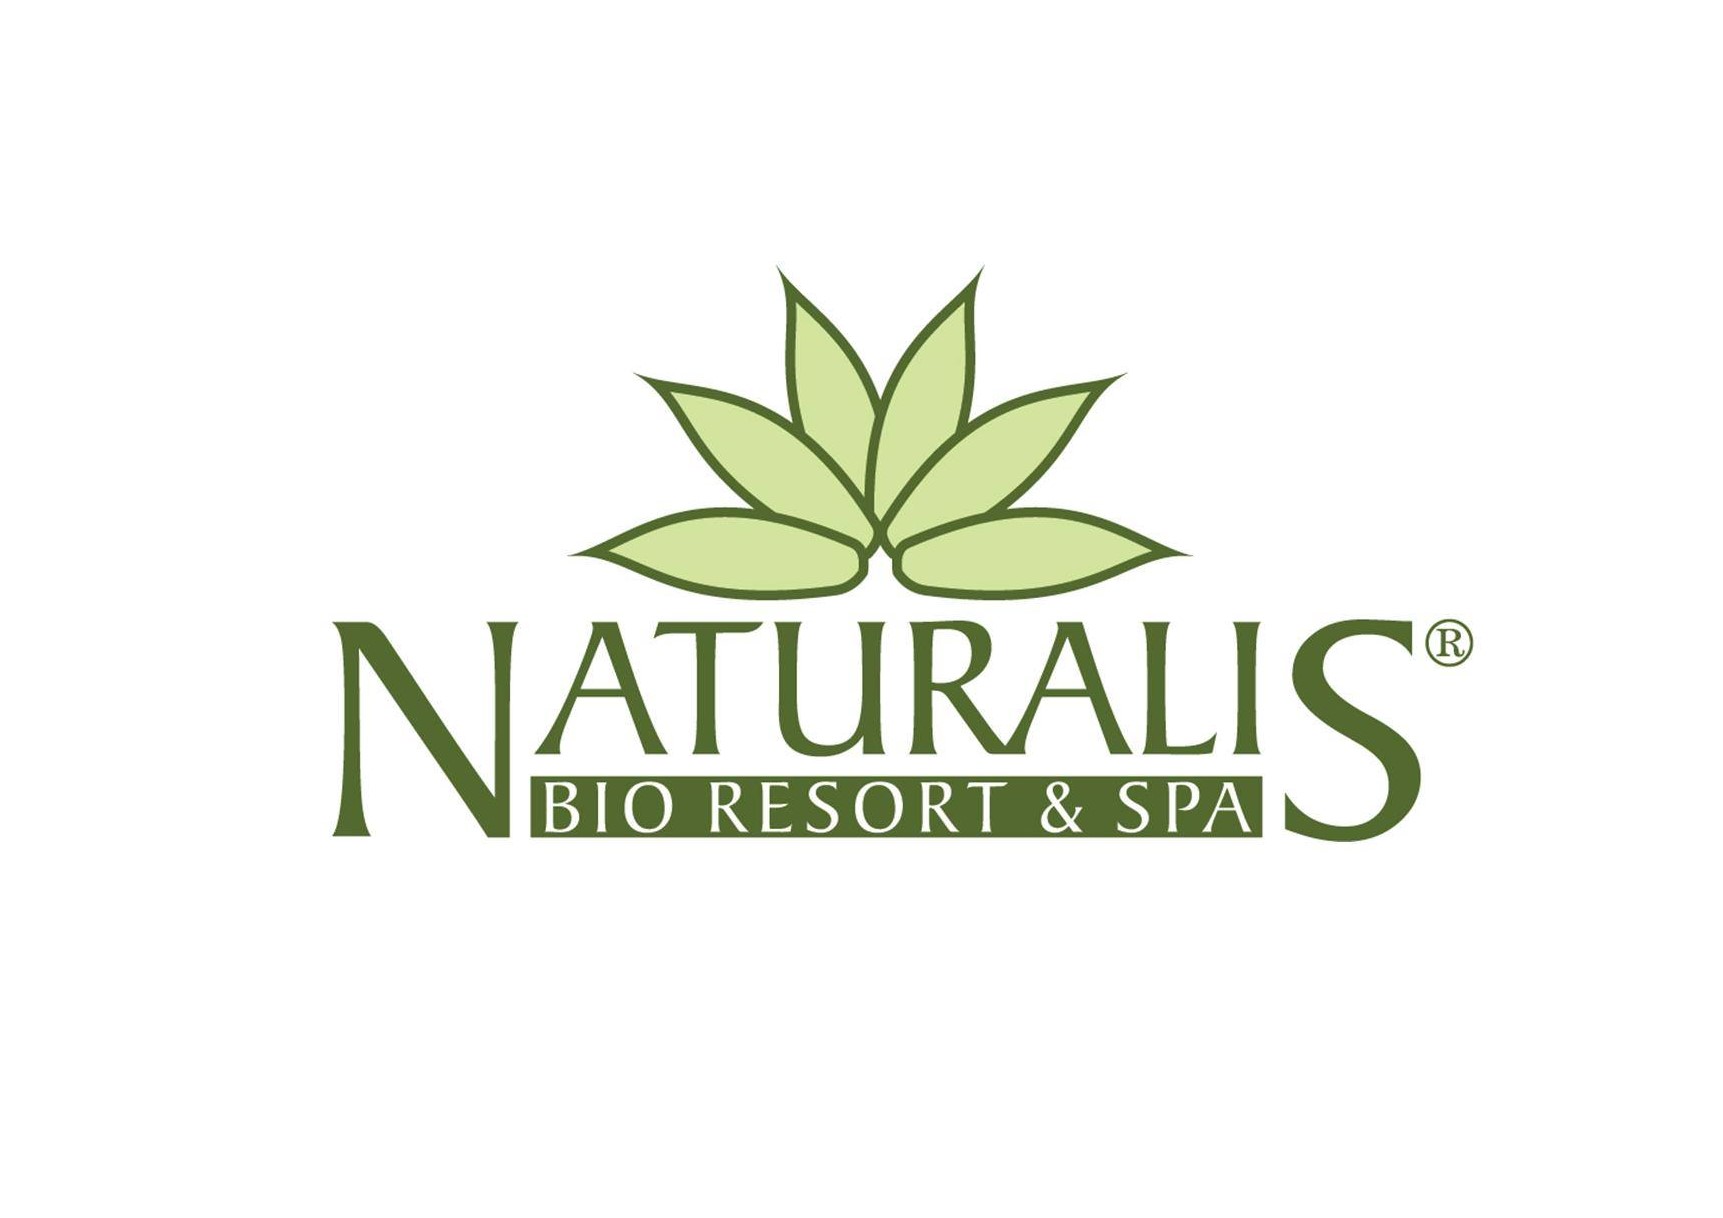 Naturalis Bio Resort